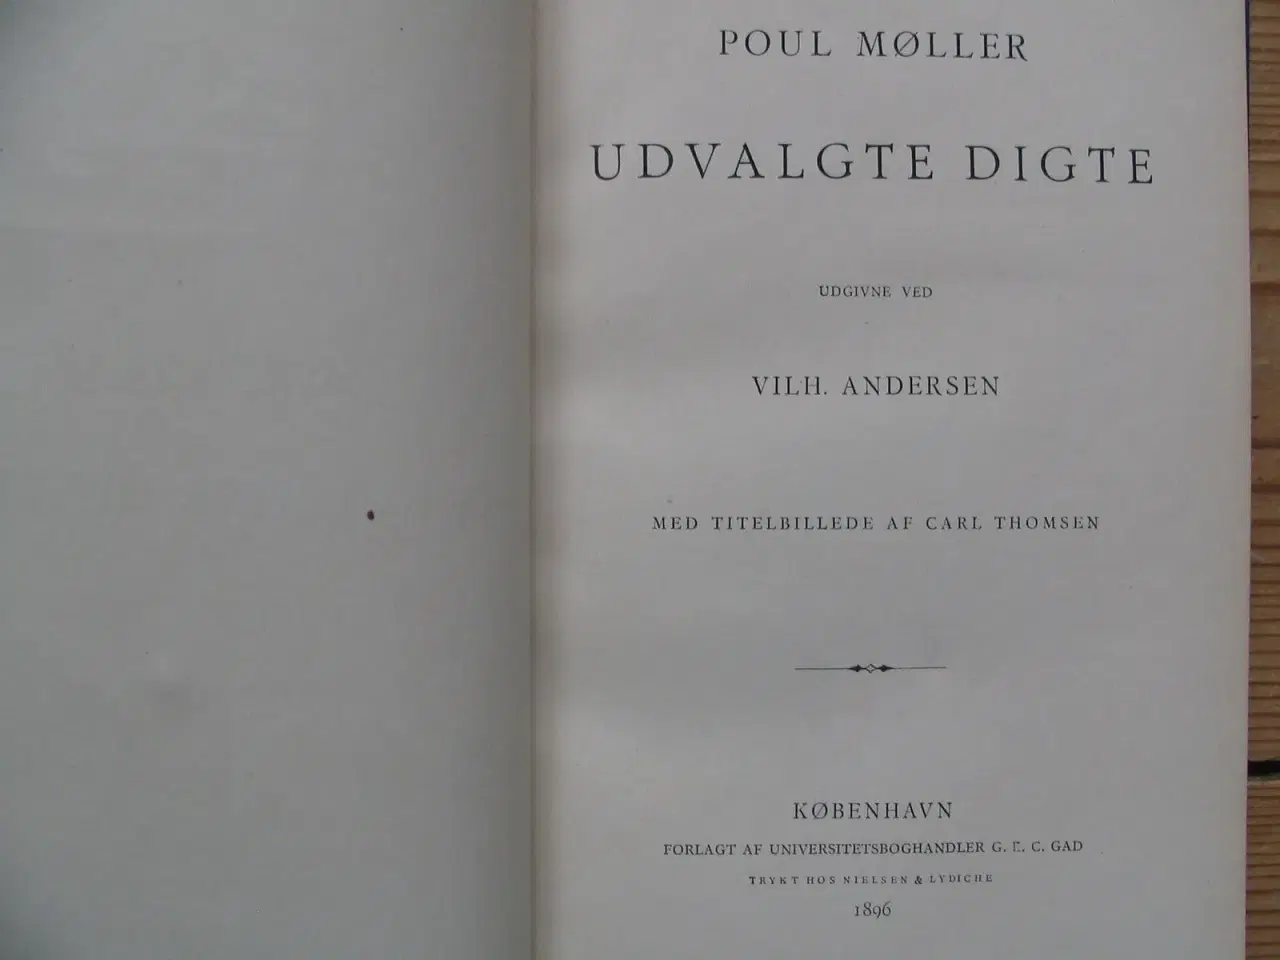 Billede 2 - Poul Martin Møller - Udvalgte digte, fra 1896